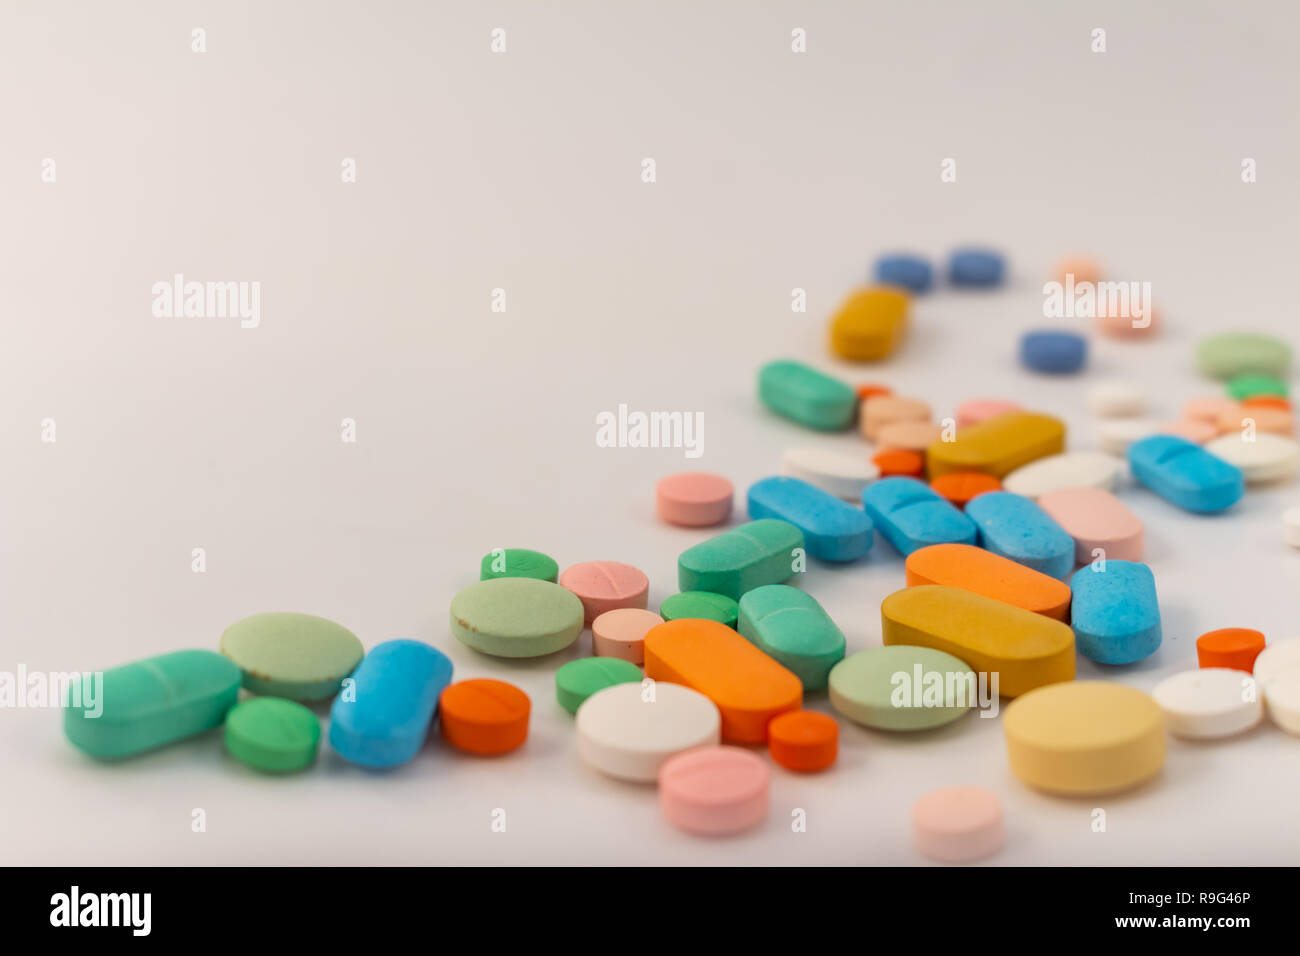 Drogen in Form von Medikamenten. Kapseln und Tabletten in verschiedenen Farben und Formen für den menschlichen Gebrauch. Arzneimittel auf weißem Hintergrund. Stockfoto